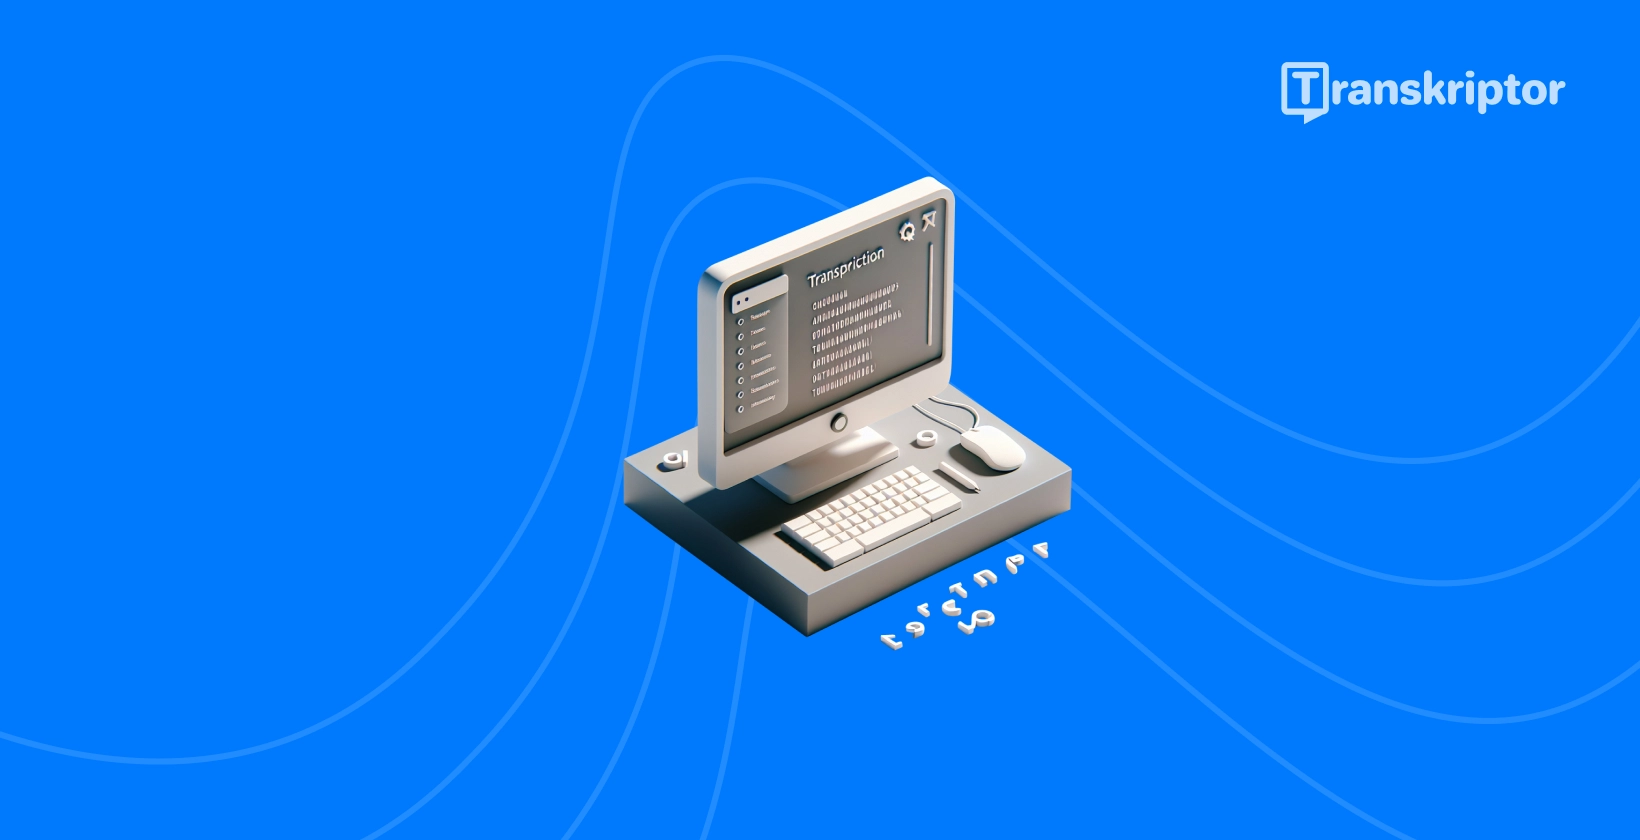 Työpöydälle MuseScore yksinkertaistettu kuvaus äänen transkriptioohjelmistosta.